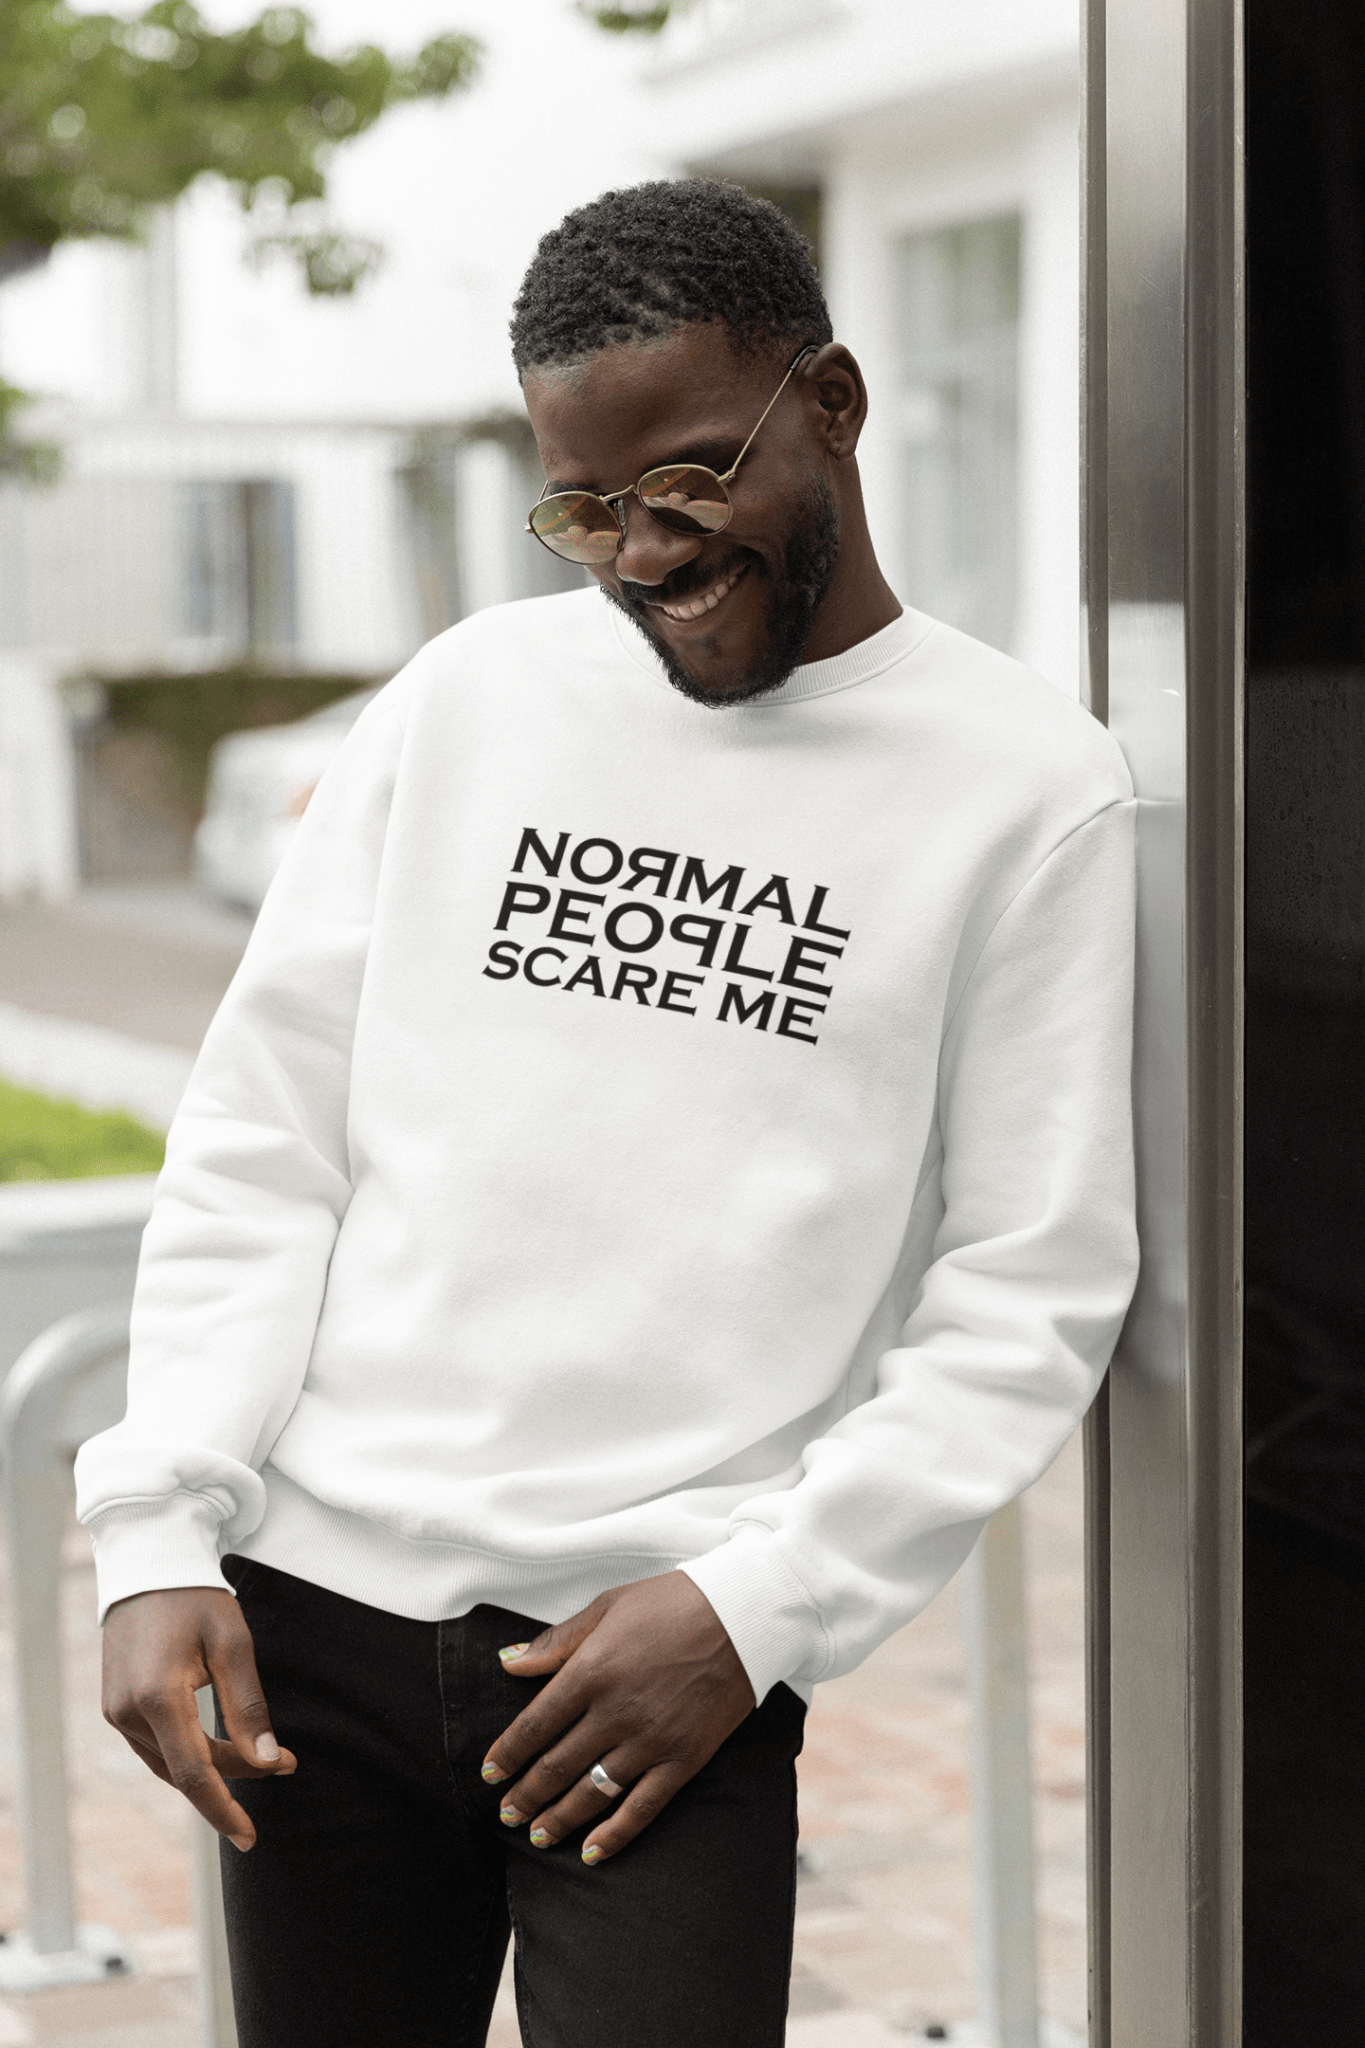 Normal Men's Sweatshirt